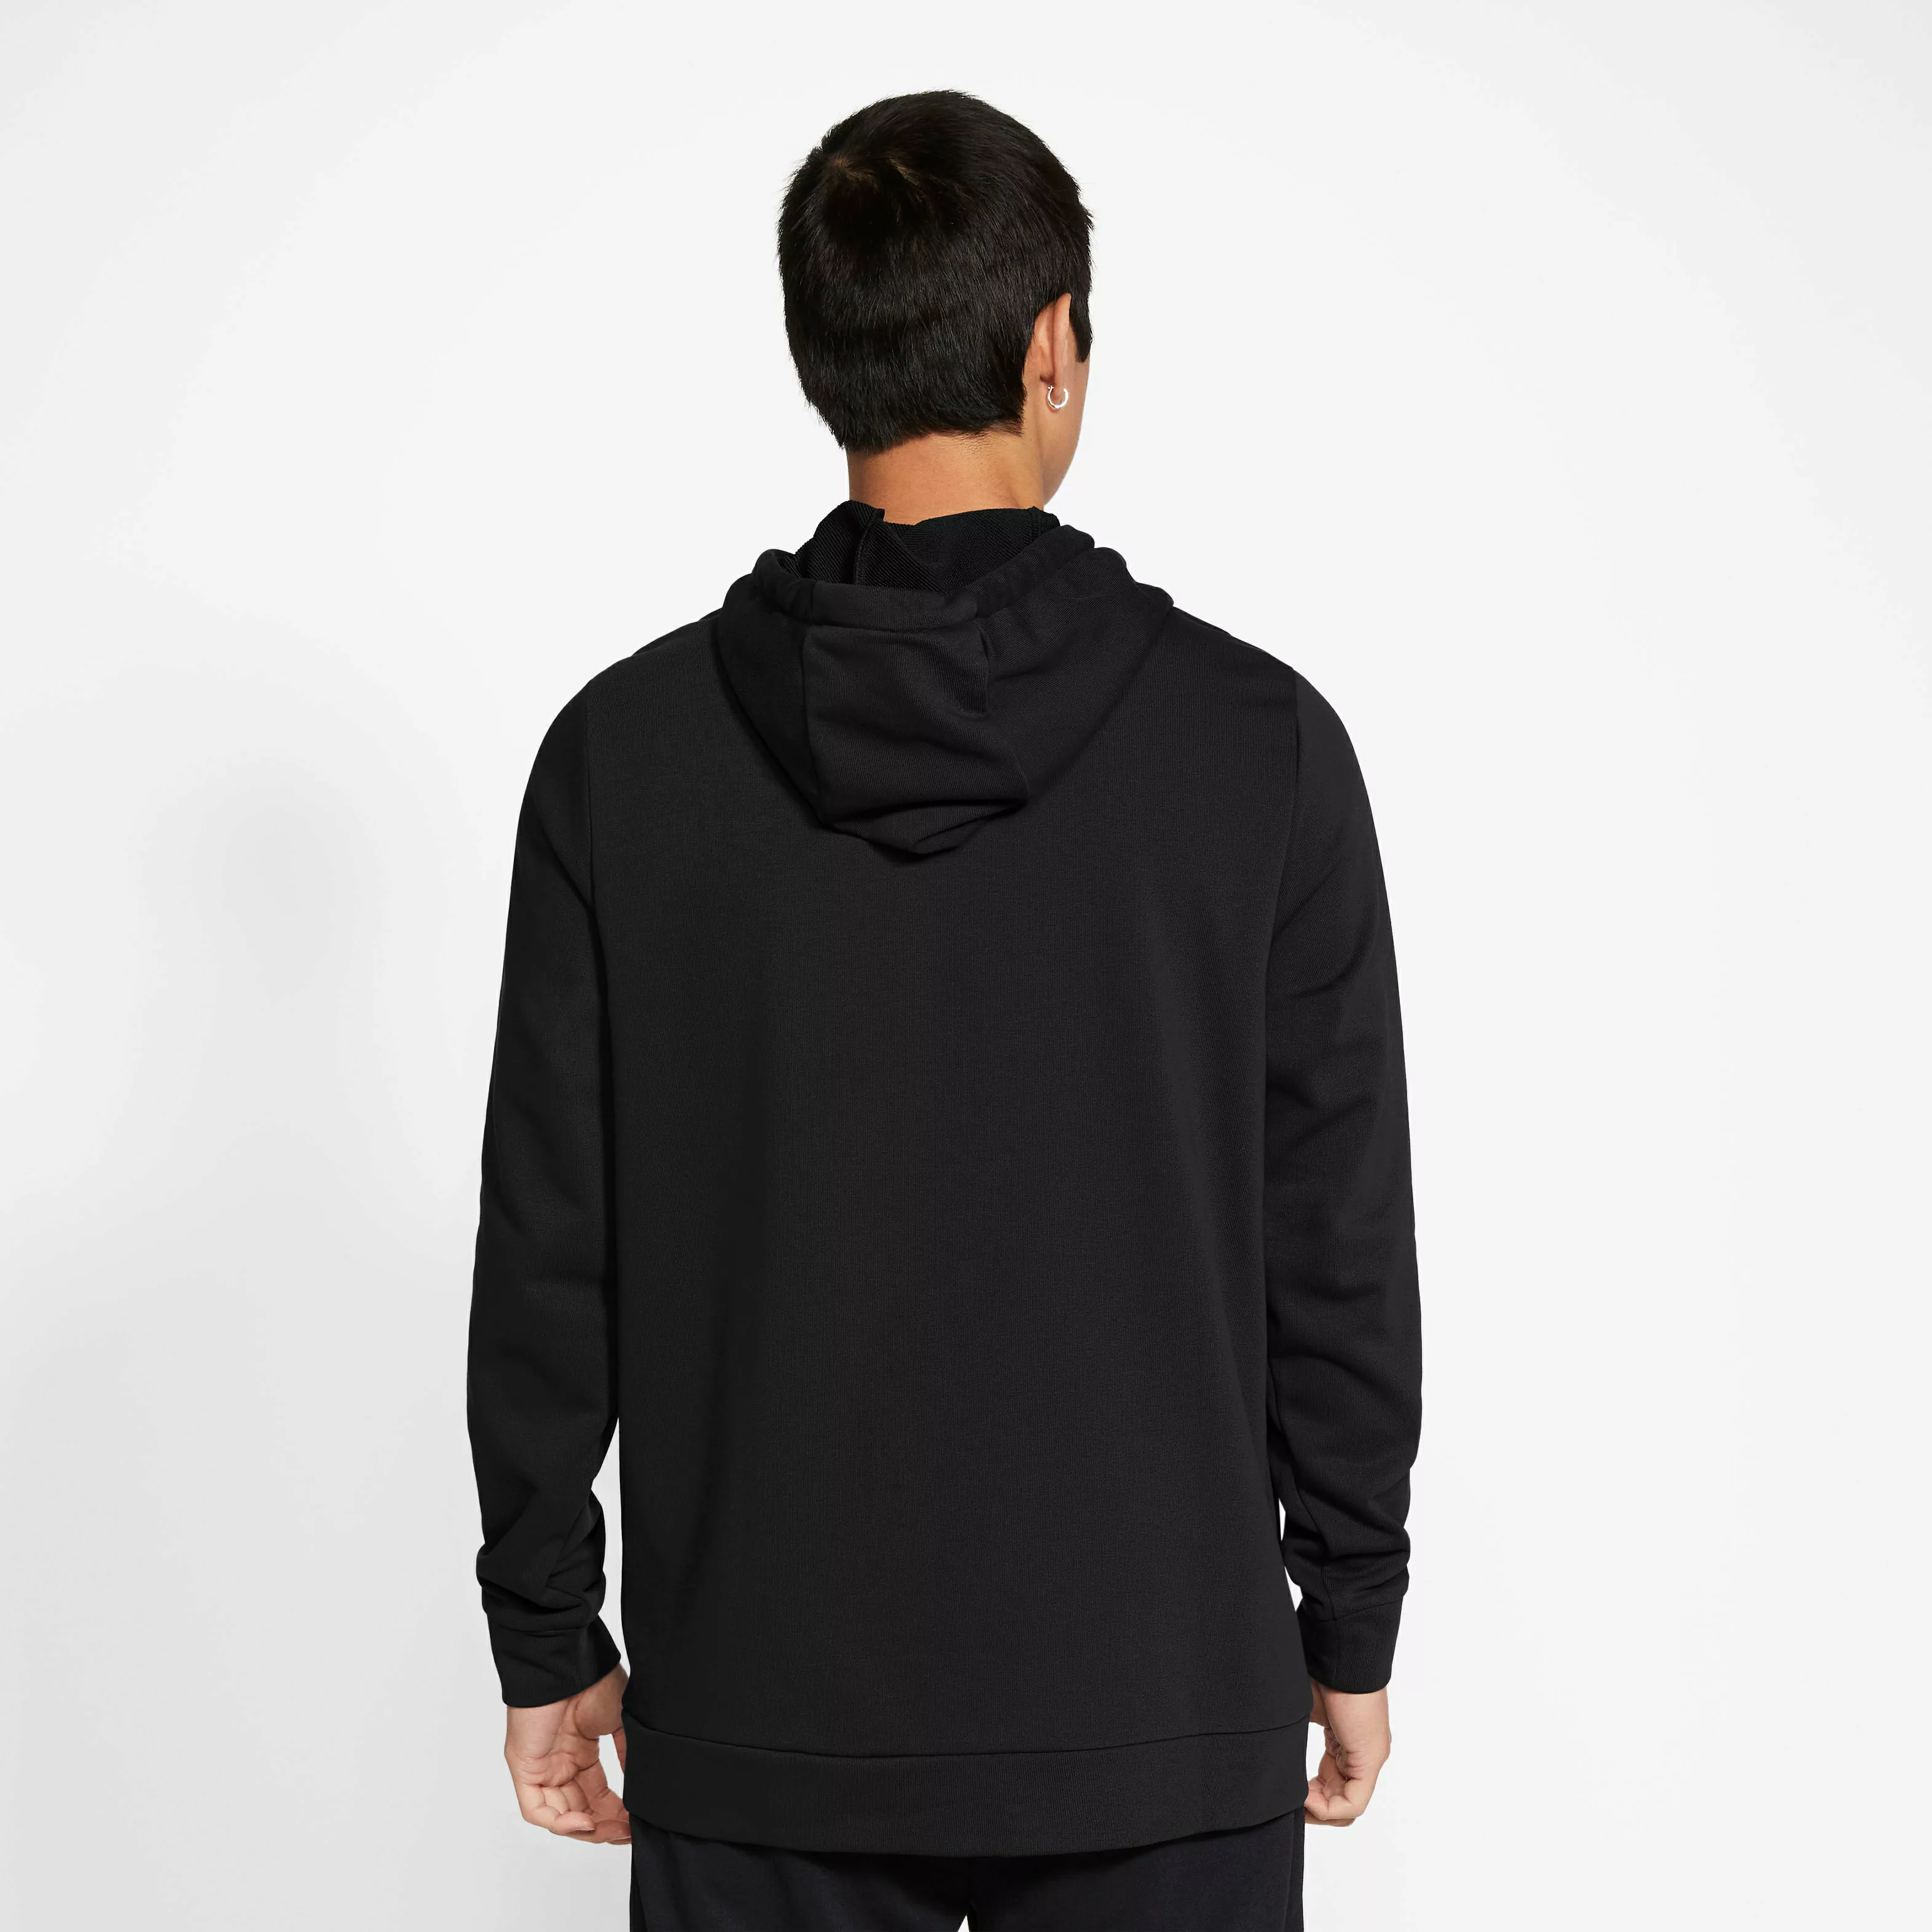 Nike Dri-fit Sweatshirt Mit Reißverschluss XL Dark Grey Heather / Black günstig online kaufen